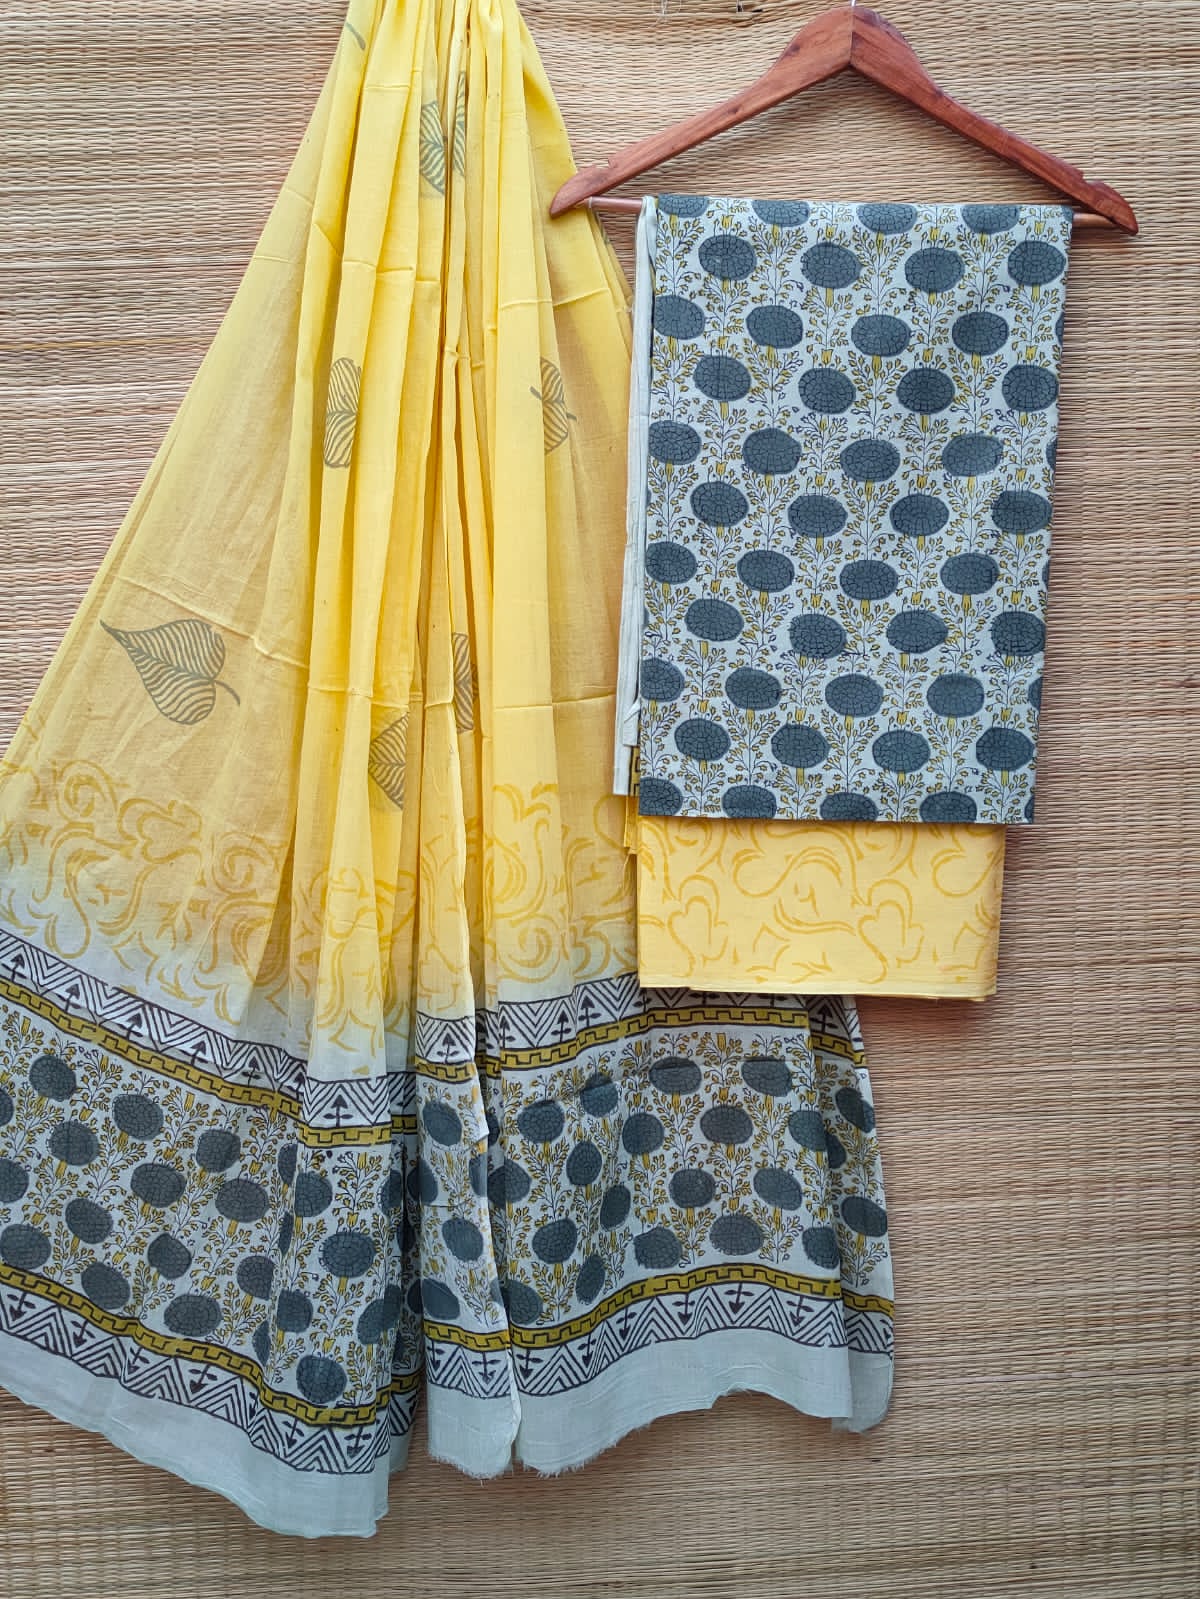 Hand Block Cotton Unstitched Salwar Suit With Cotton/Mulmul Dupatta - JBCM661